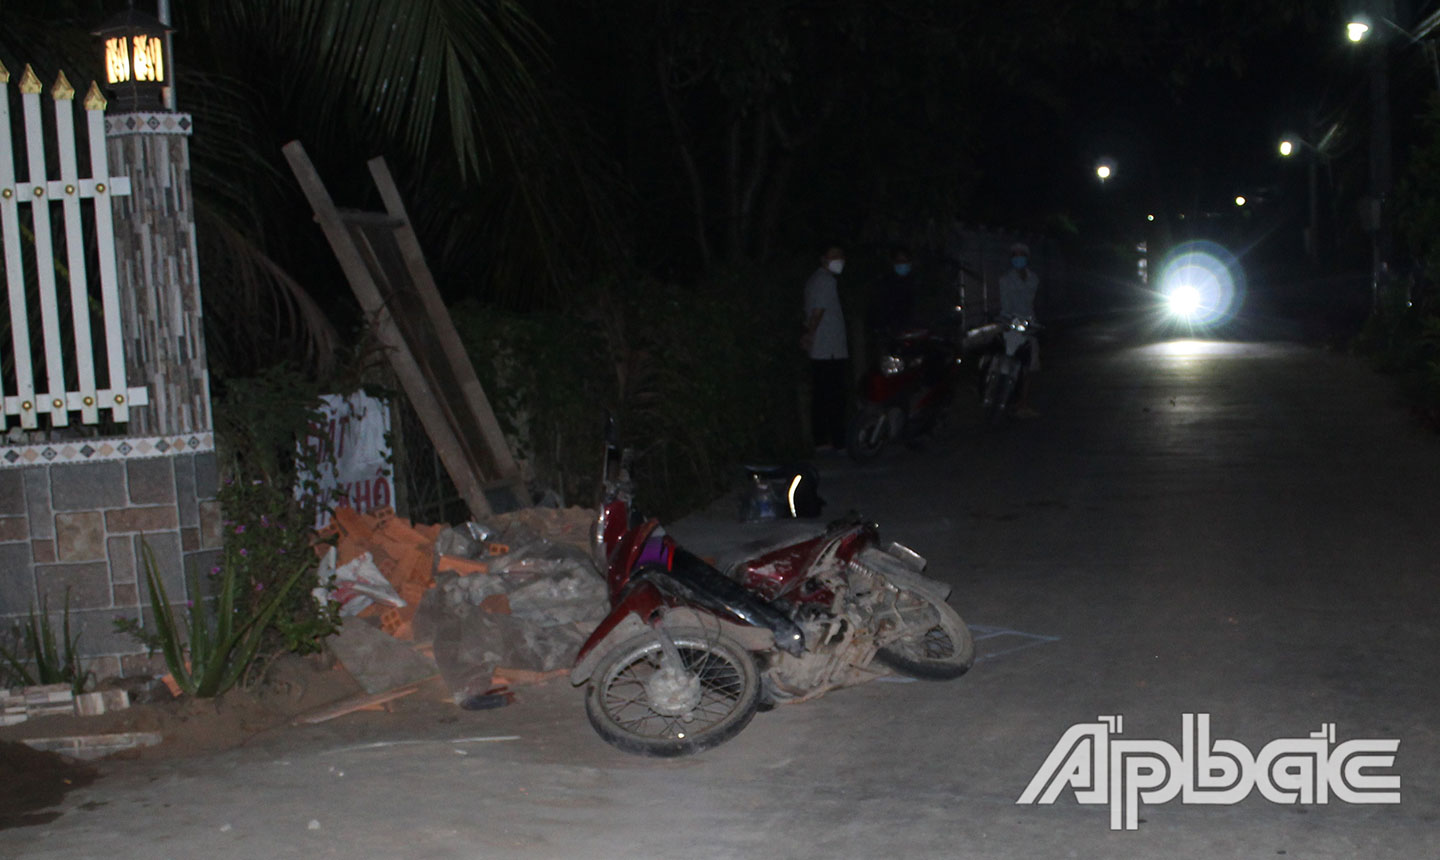 Vụ tai nạn xảy ra trên đường ấp Dầu, thuộc ấp Thới, xã Đông Hòa, huyện  Châu Thành. Nguyên nhân do người lái xe máy không đi bên phải theo chiều đi của mình dẫn đến tai nạn với người đi bộ. Hậu quả, người lái xe máy tử vong.